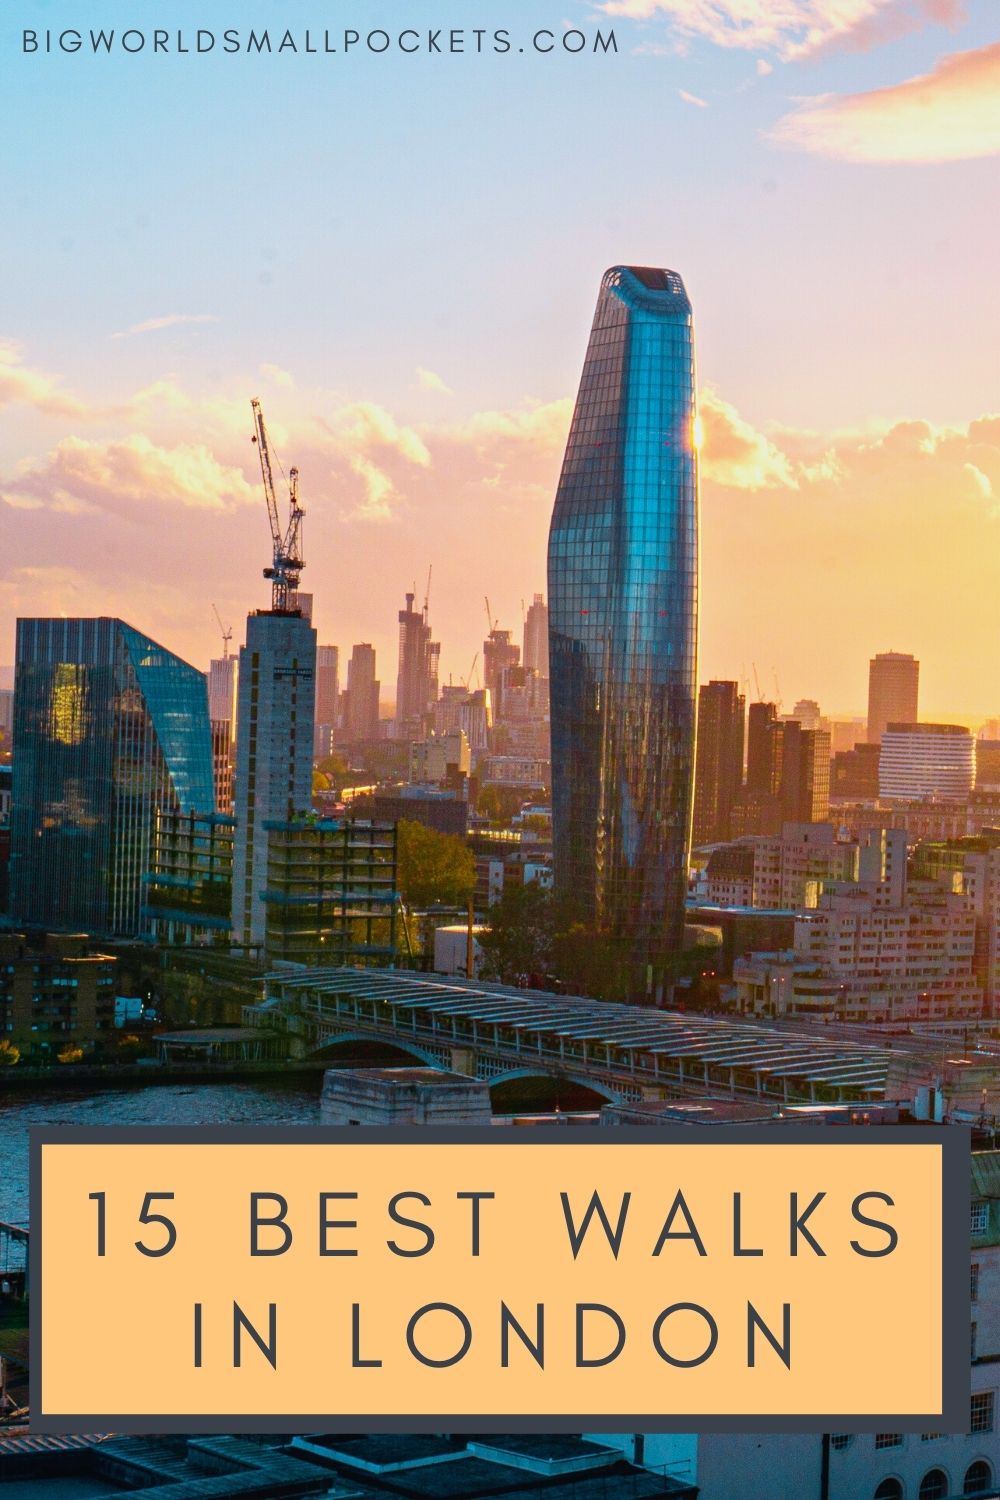 The 15 Best Walks in London